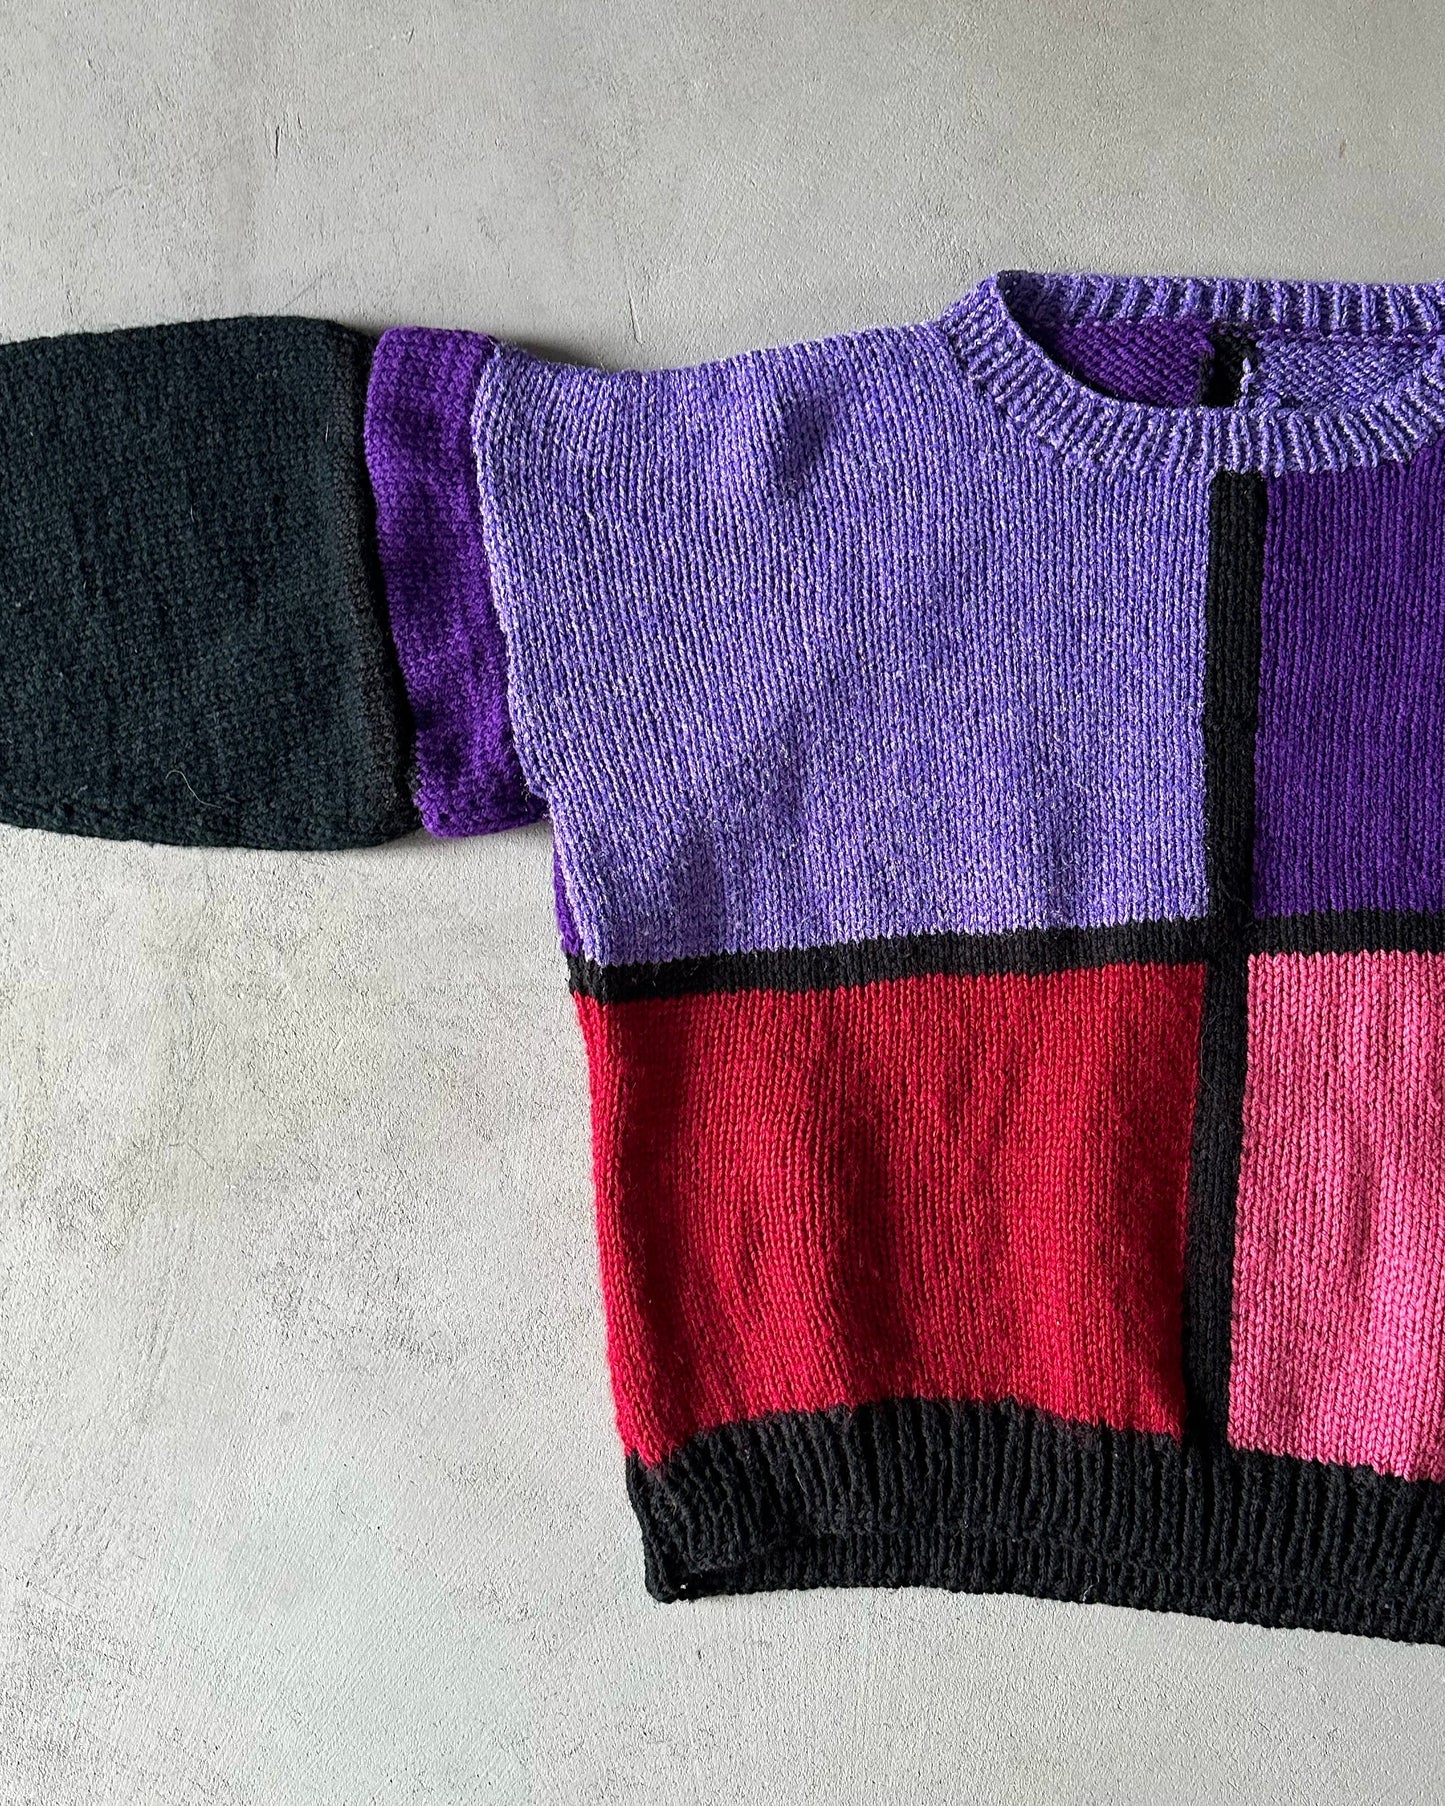 1980s - Black/Purple "Square" Wool Sweater - (W)M-L